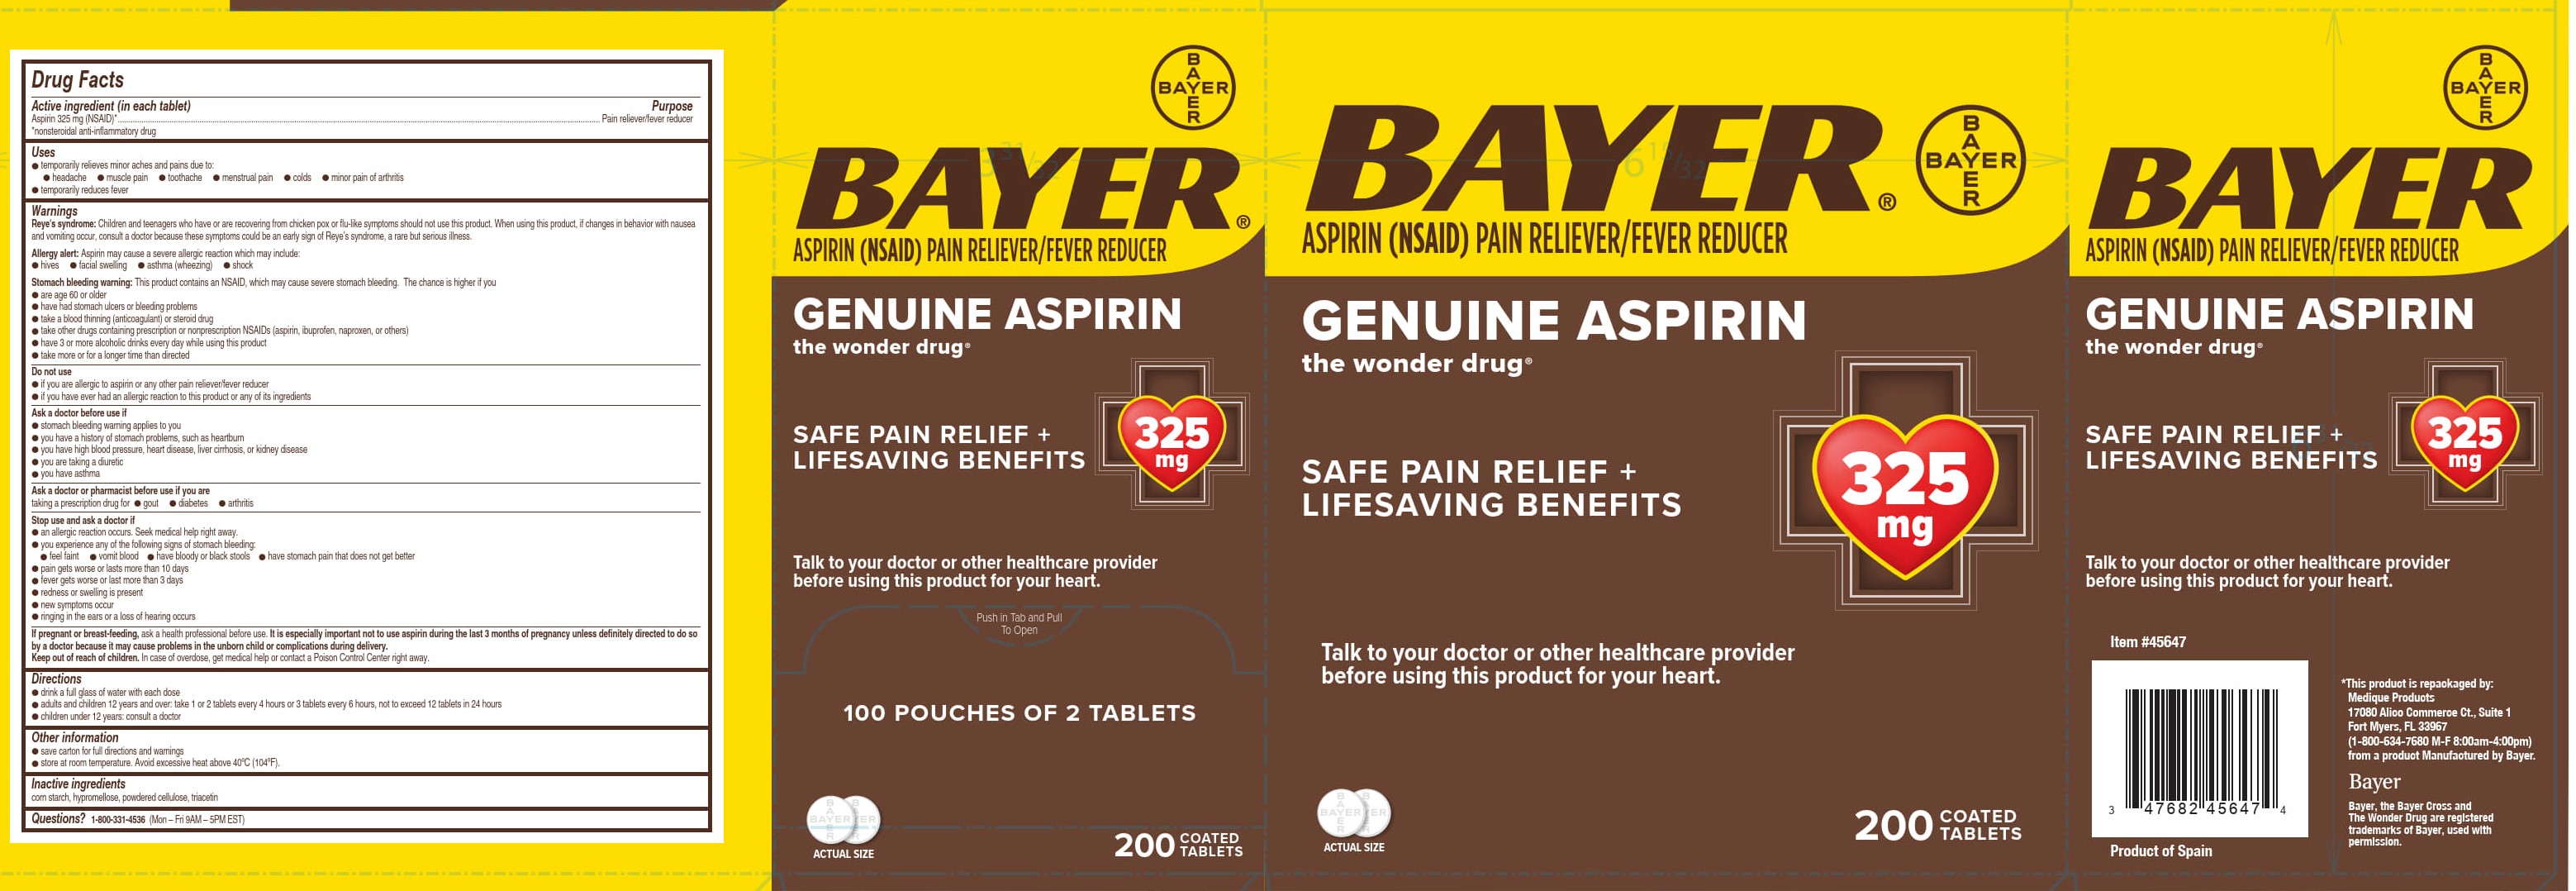 456R Bayer Aspirin 45647 11-28-23